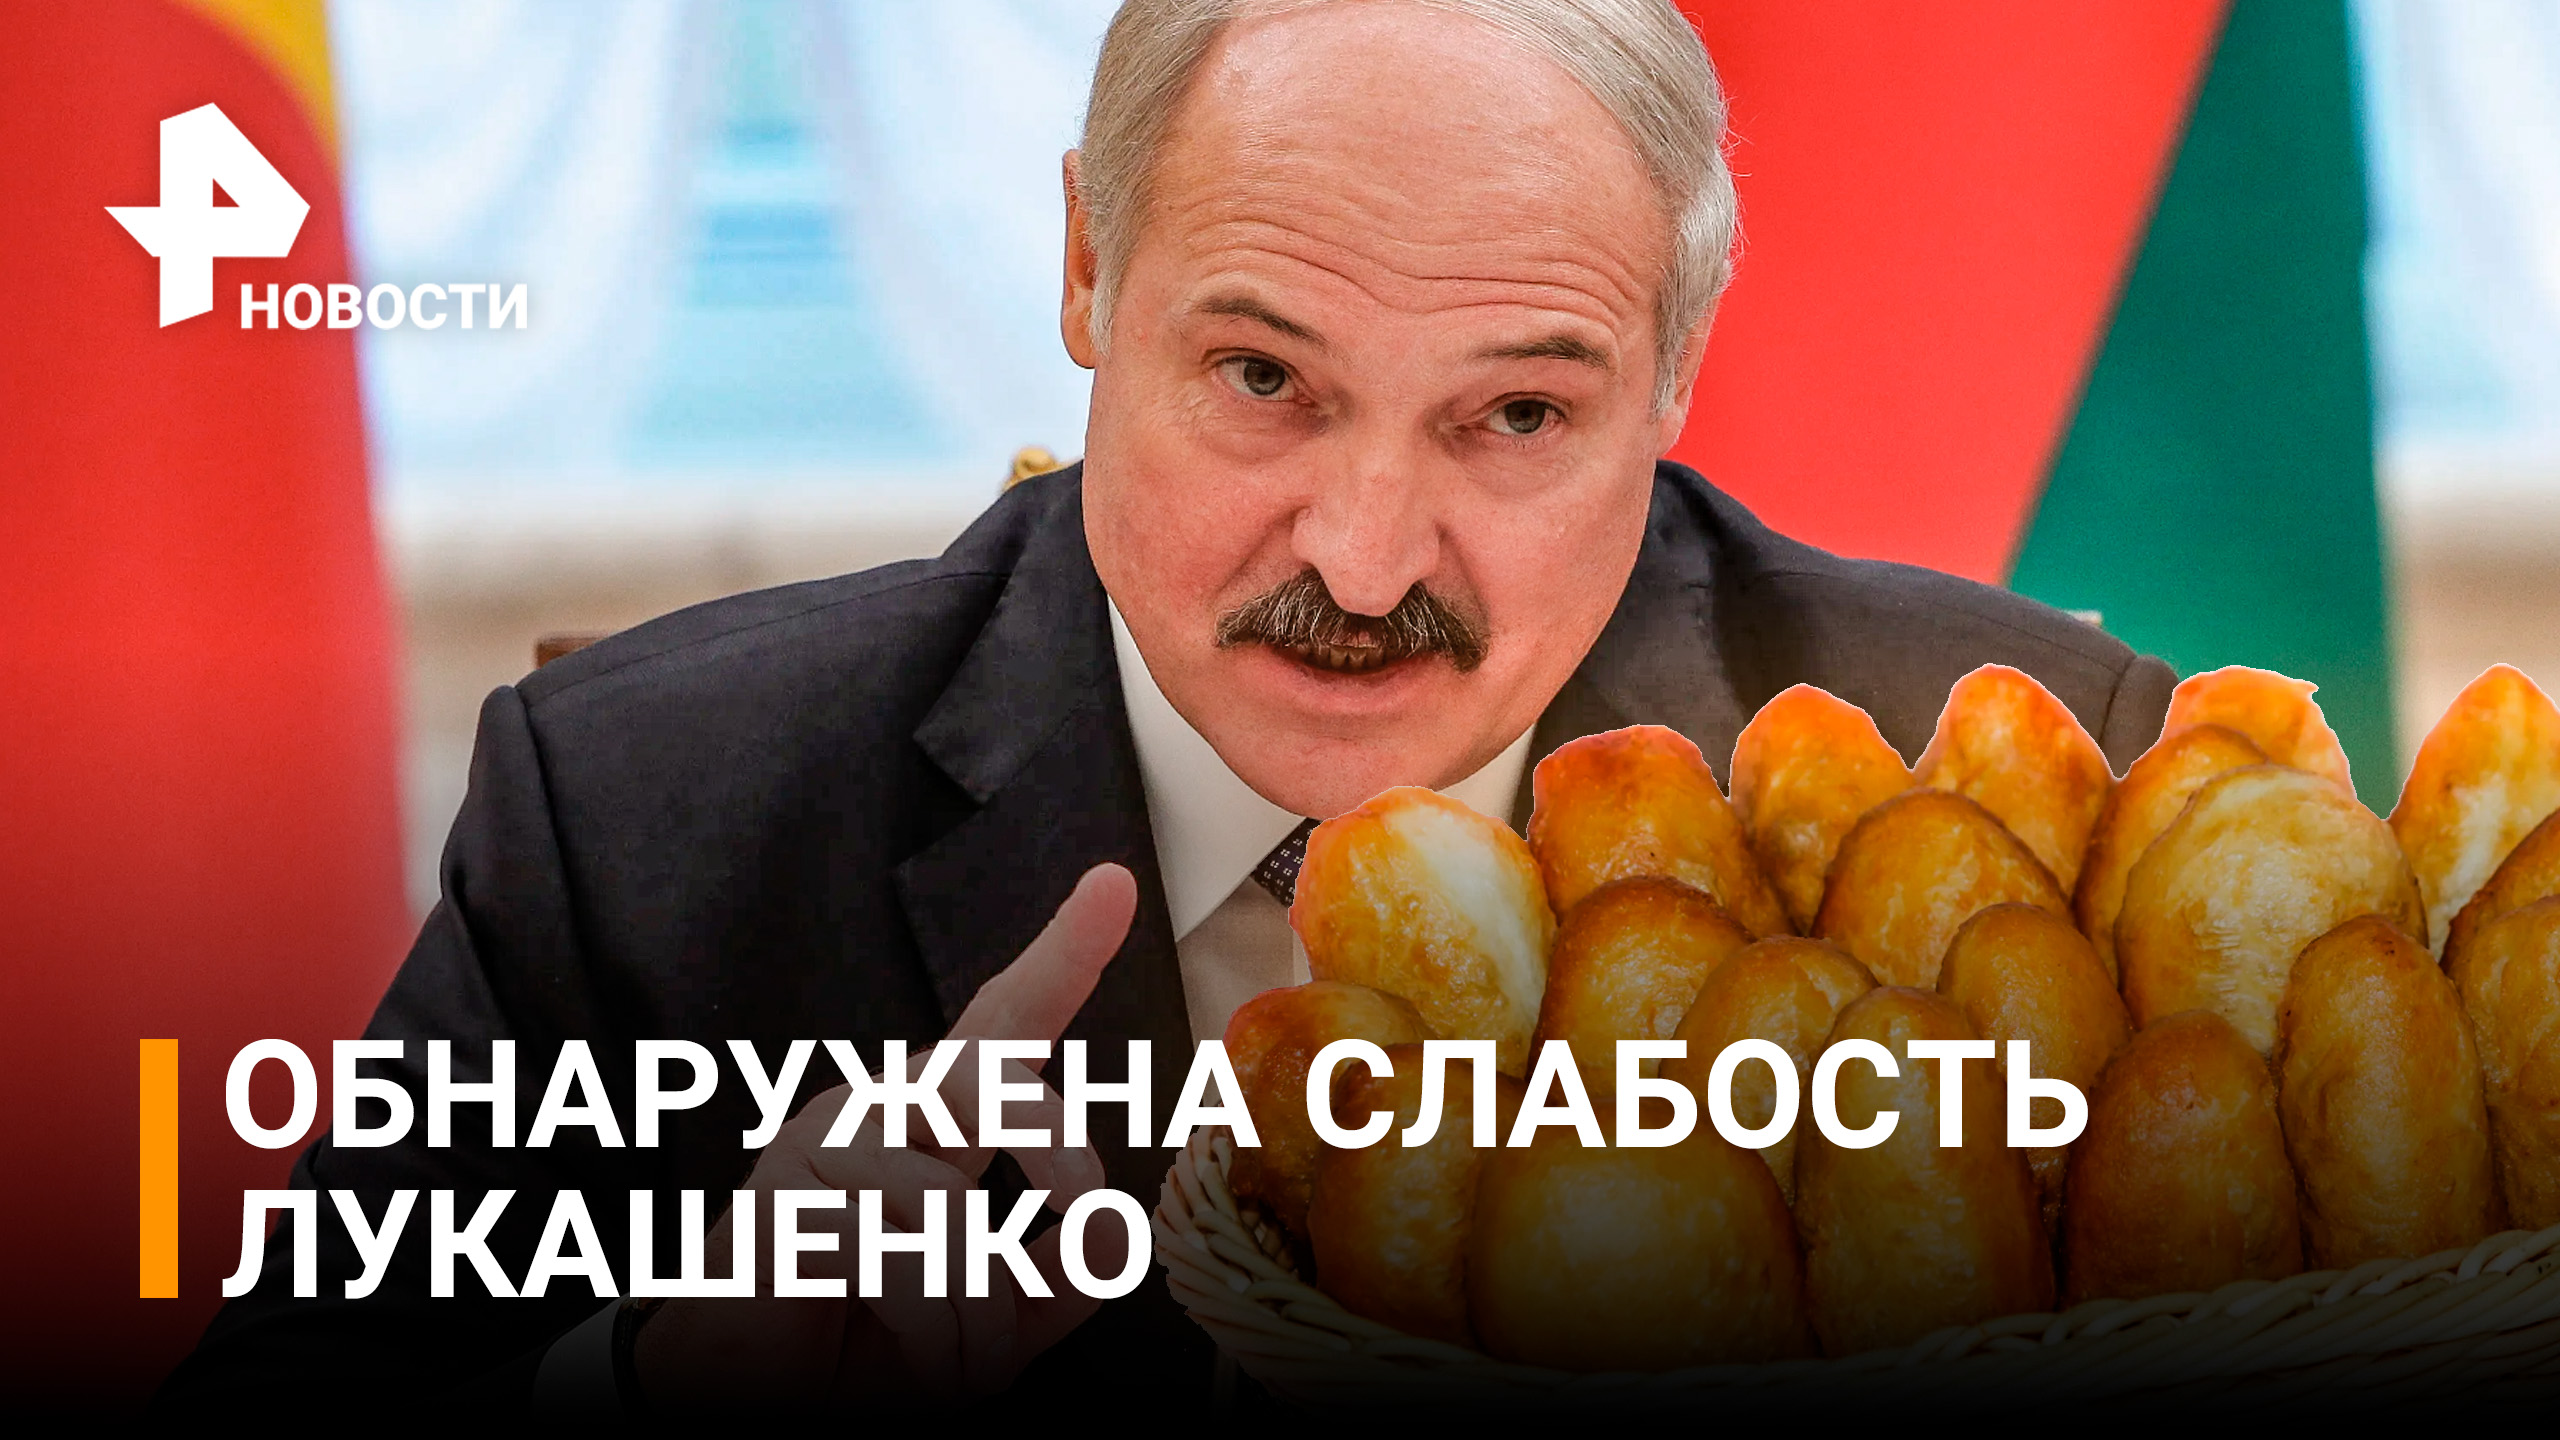 Лукашенко признался, что питает слабость к булочкам / РЕН Новости